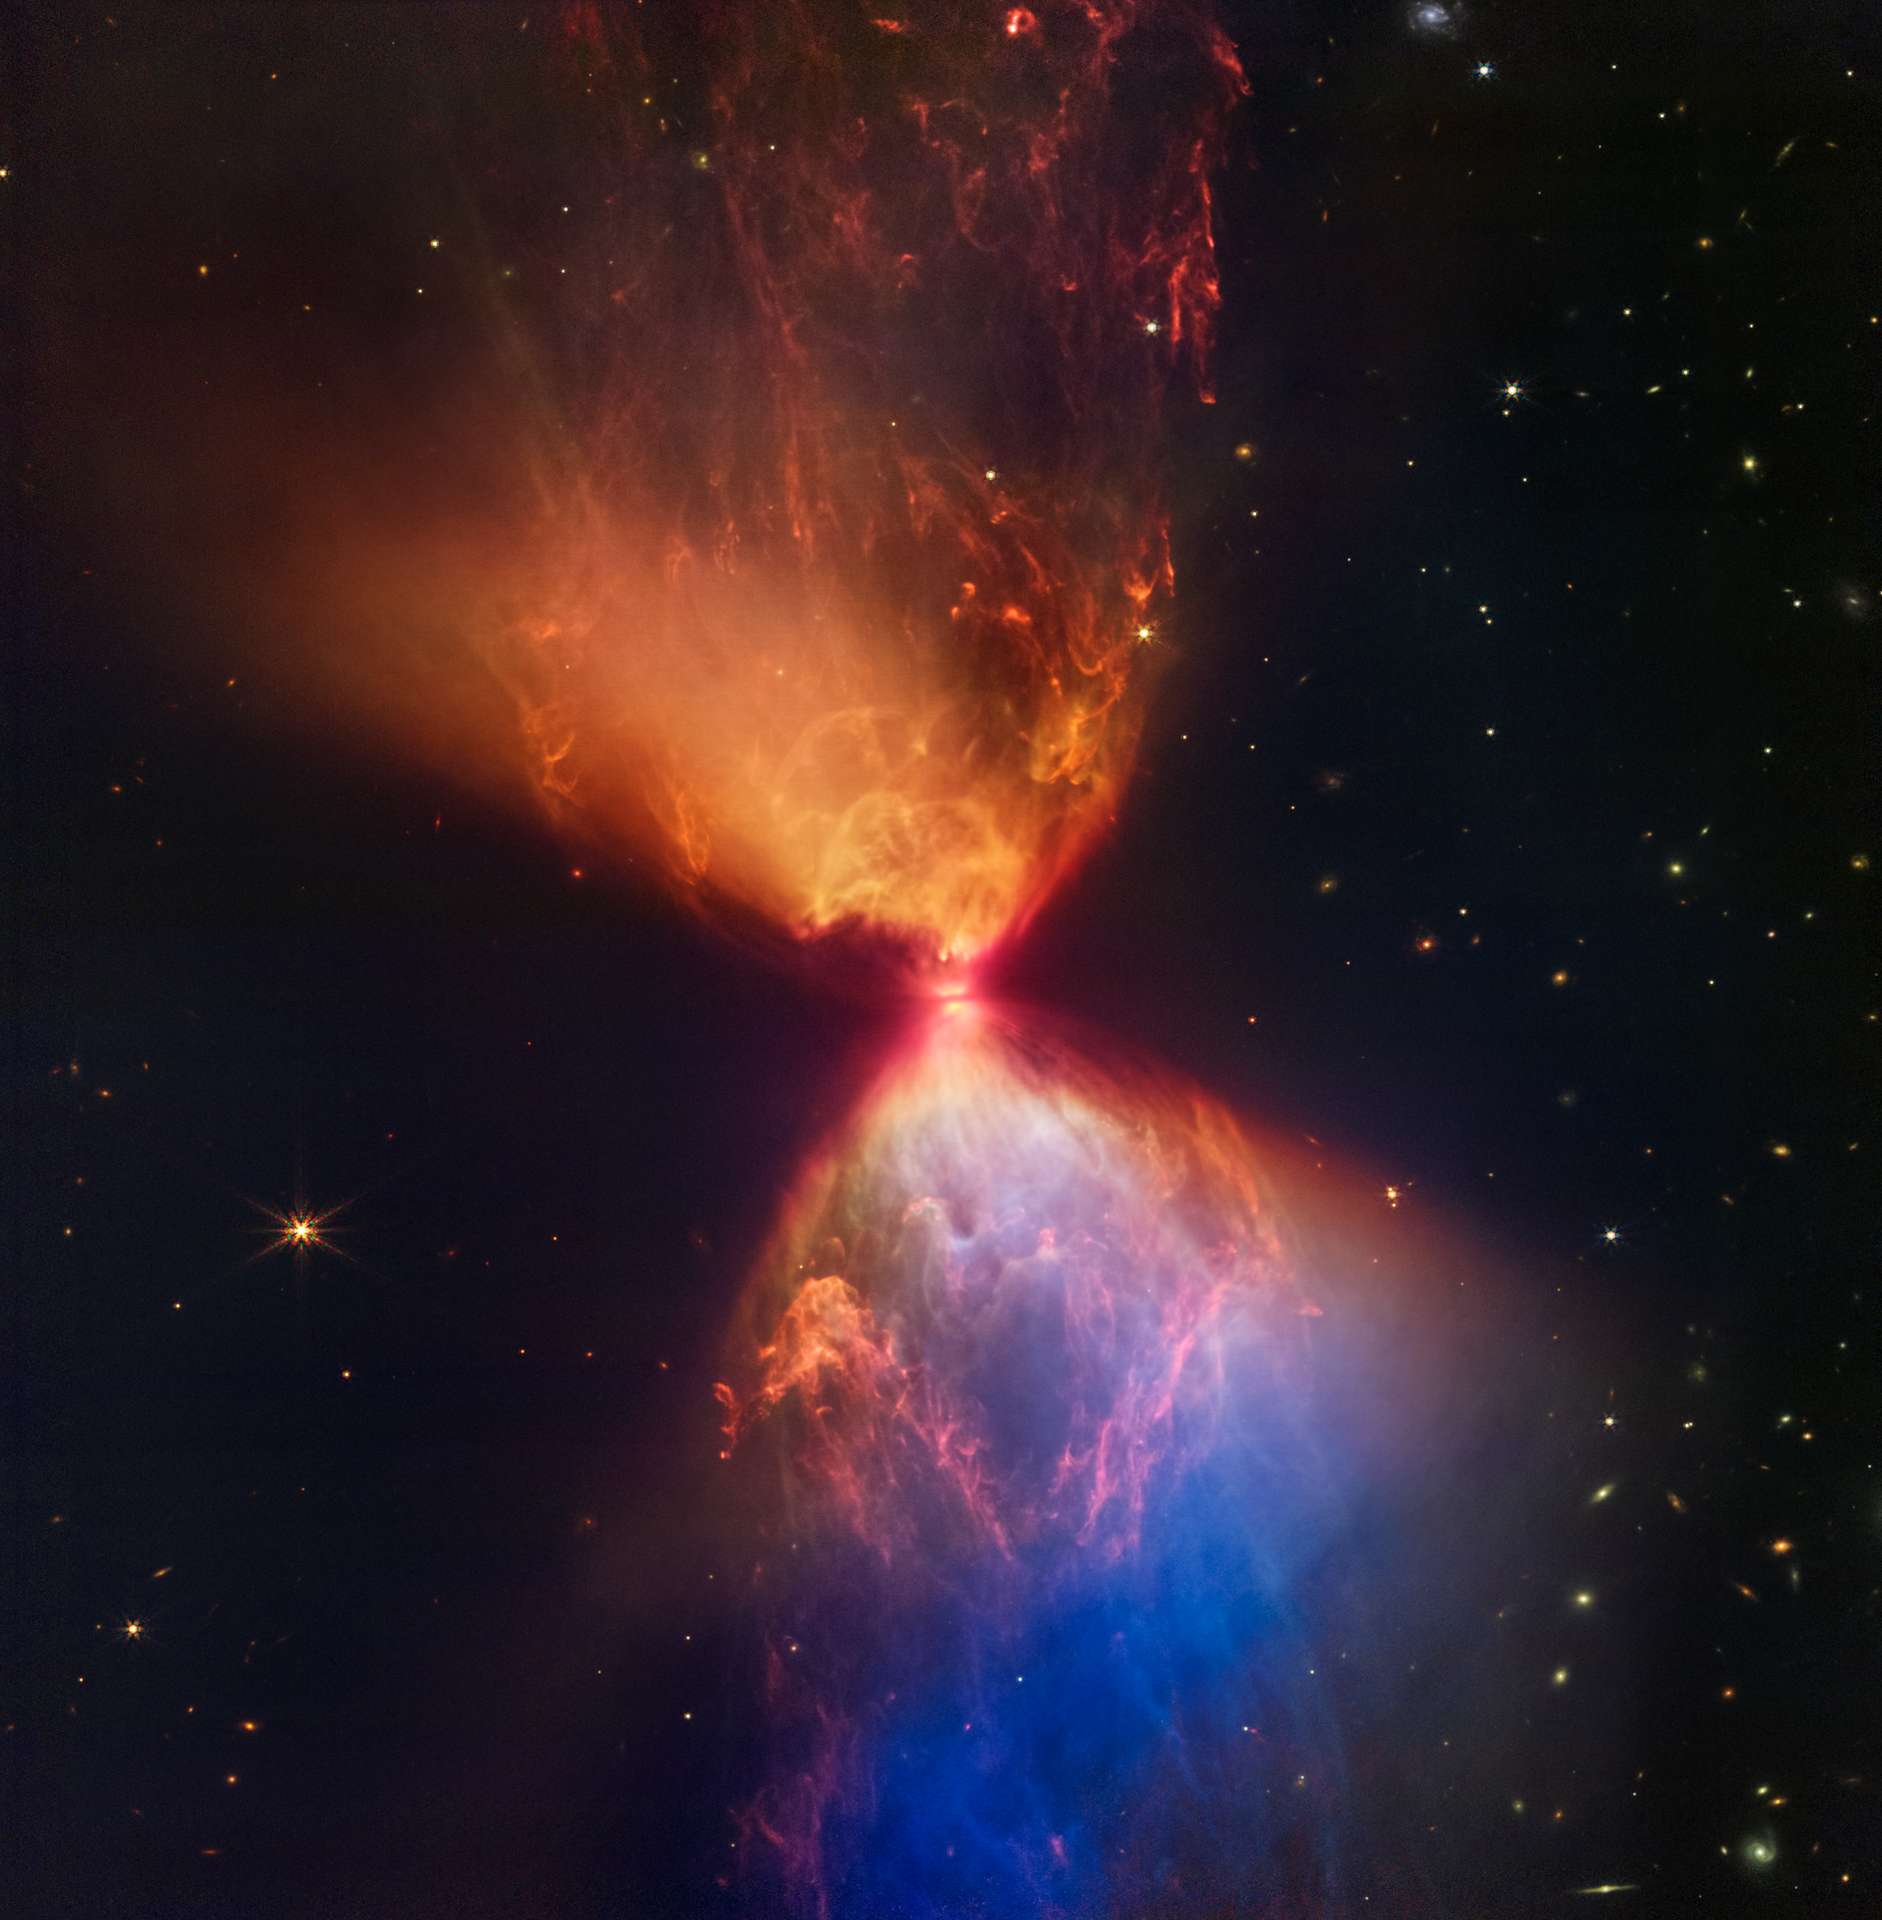 El Telescopio James-Webb nos envía una impresionante imagen de un reloj de arena cósmico